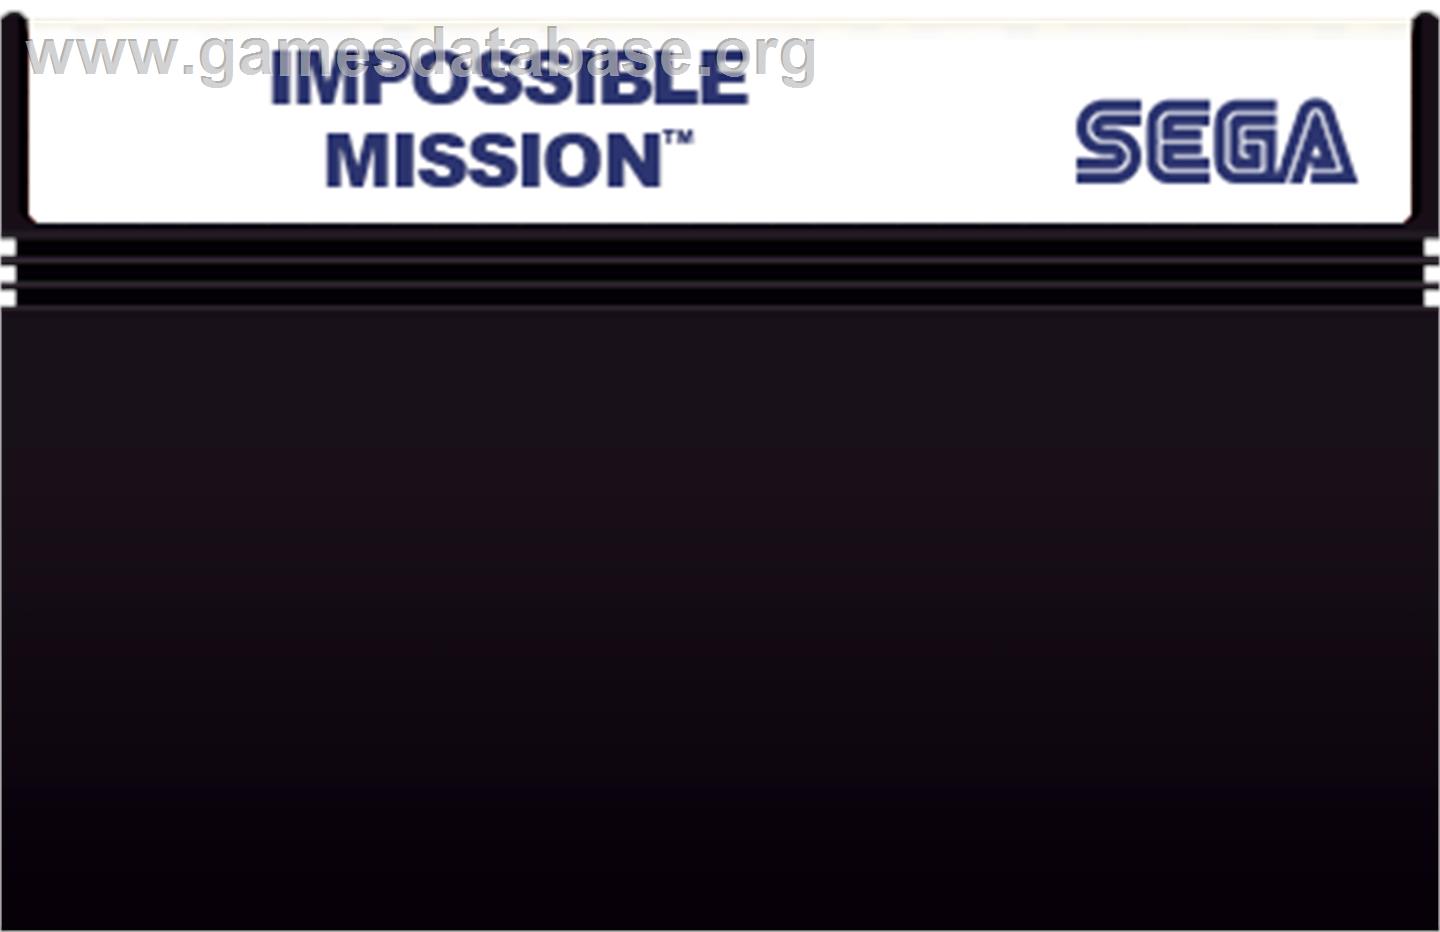 Impossible Mission - Sega Master System - Artwork - Cartridge